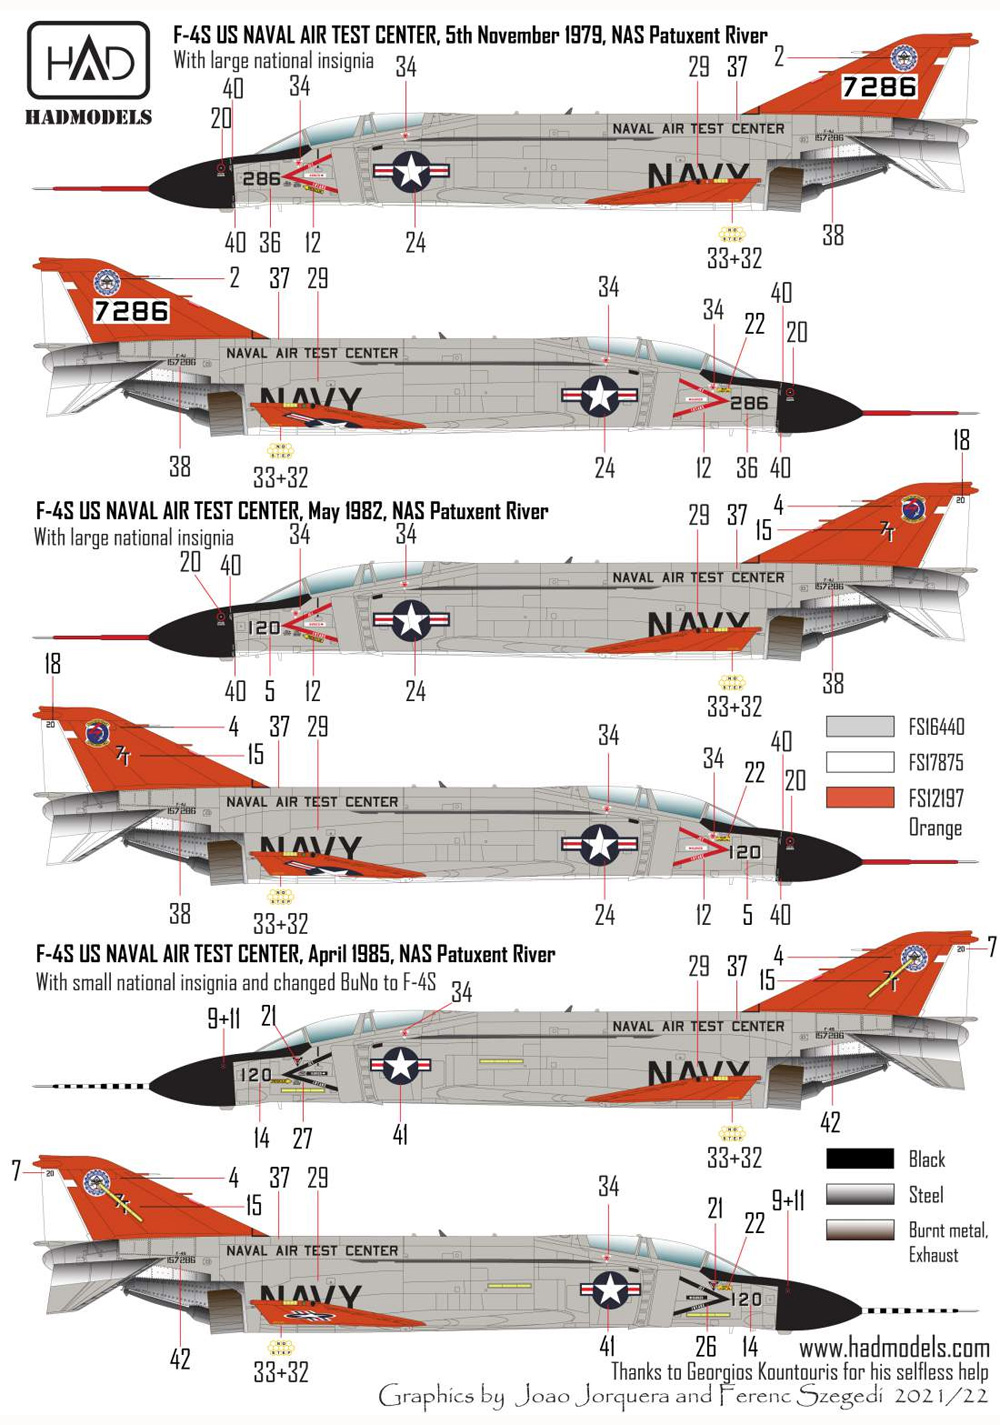 F-4S/J ファントム 2 海軍航空試験センター ファイナル・カウントダウン デカール デカール (HAD MODELS 1/72 デカール No.72255) 商品画像_3